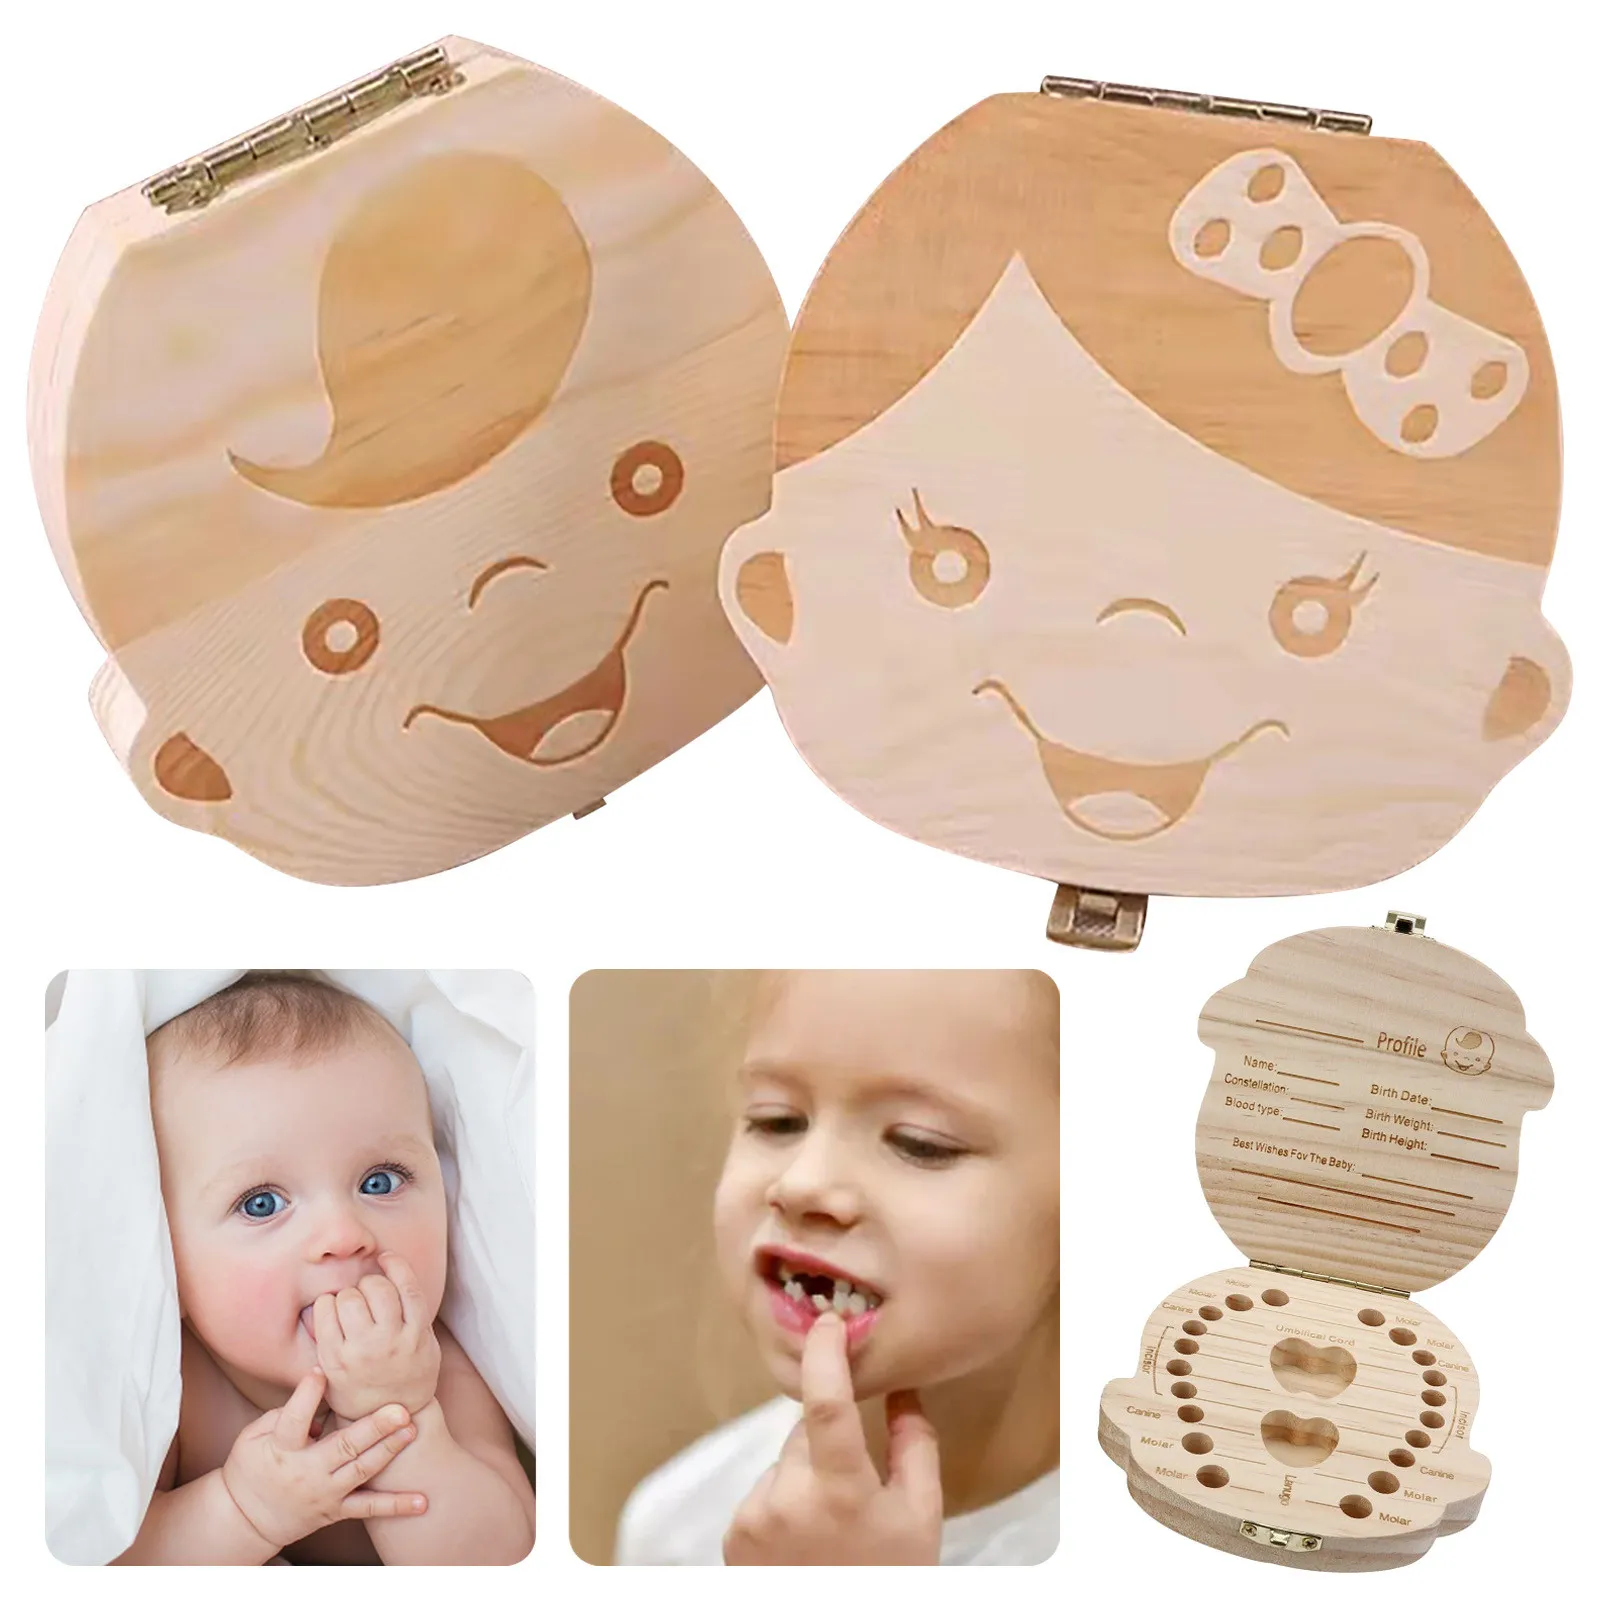 Baby Child First Tooth Keepsake Wooden Storage Box For Kids Boy Girl Milk Teeth 